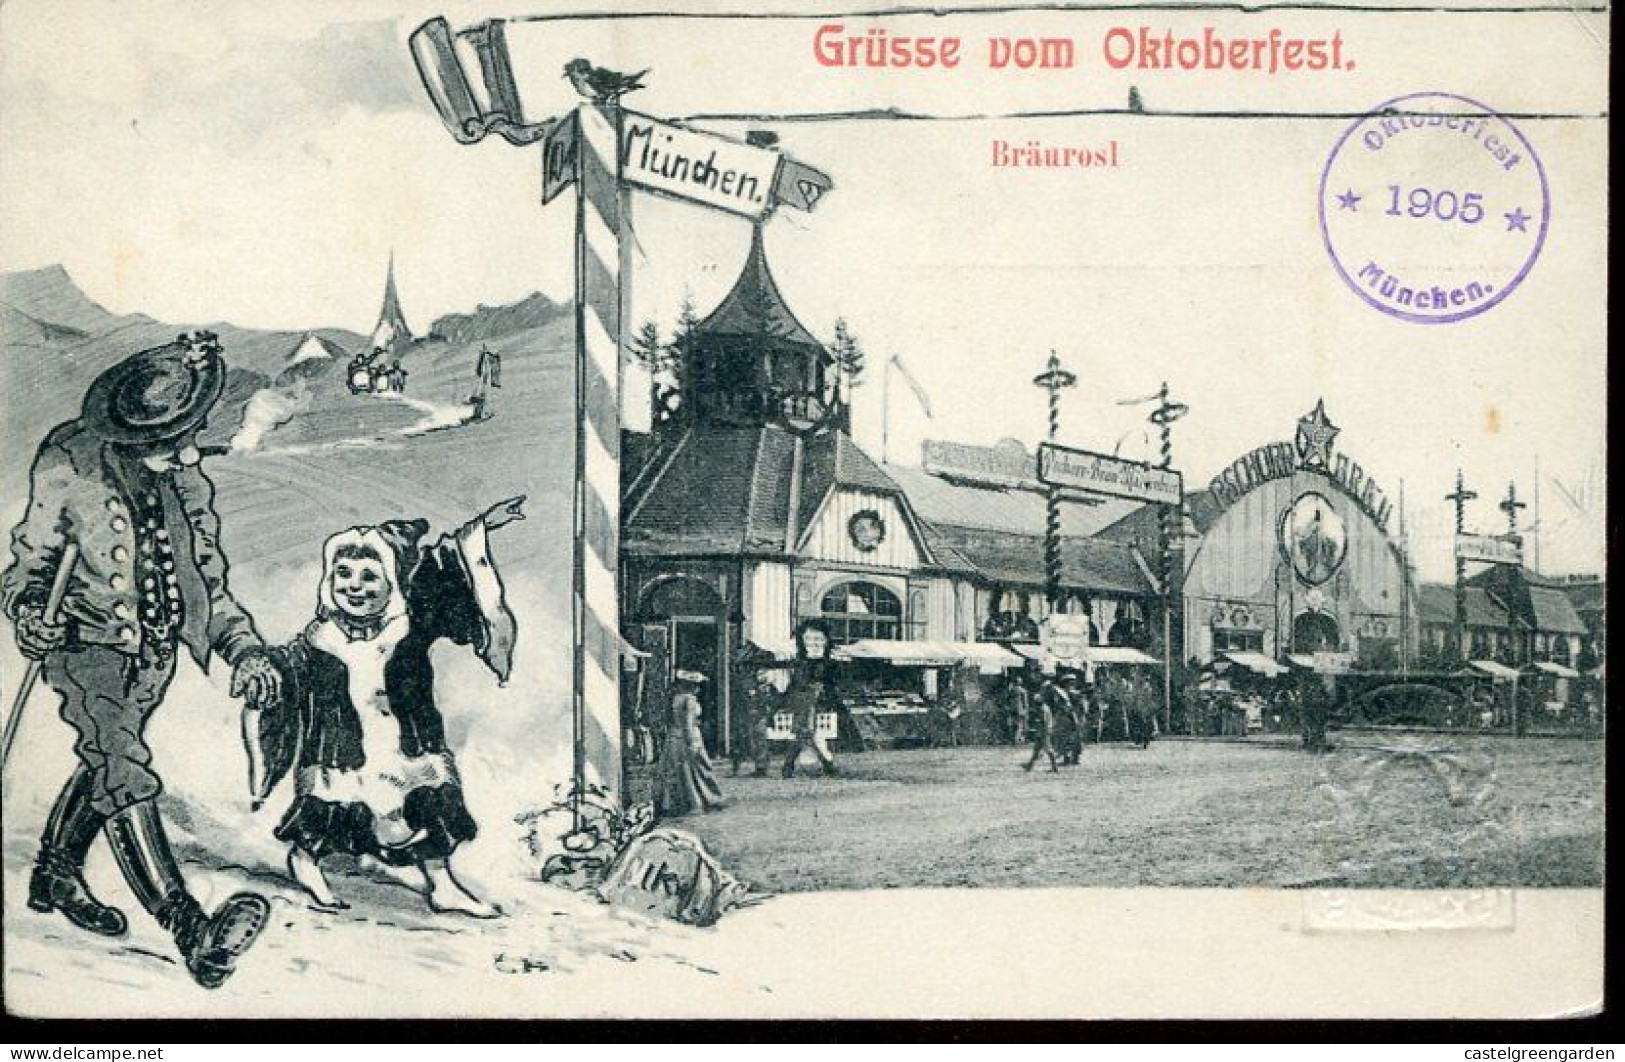 X 0578 Bayern Baviere,stationery Card 5pf.grusse Vom Oktoberfest Munchen ,1905 Braurosl, - Ganzsachen